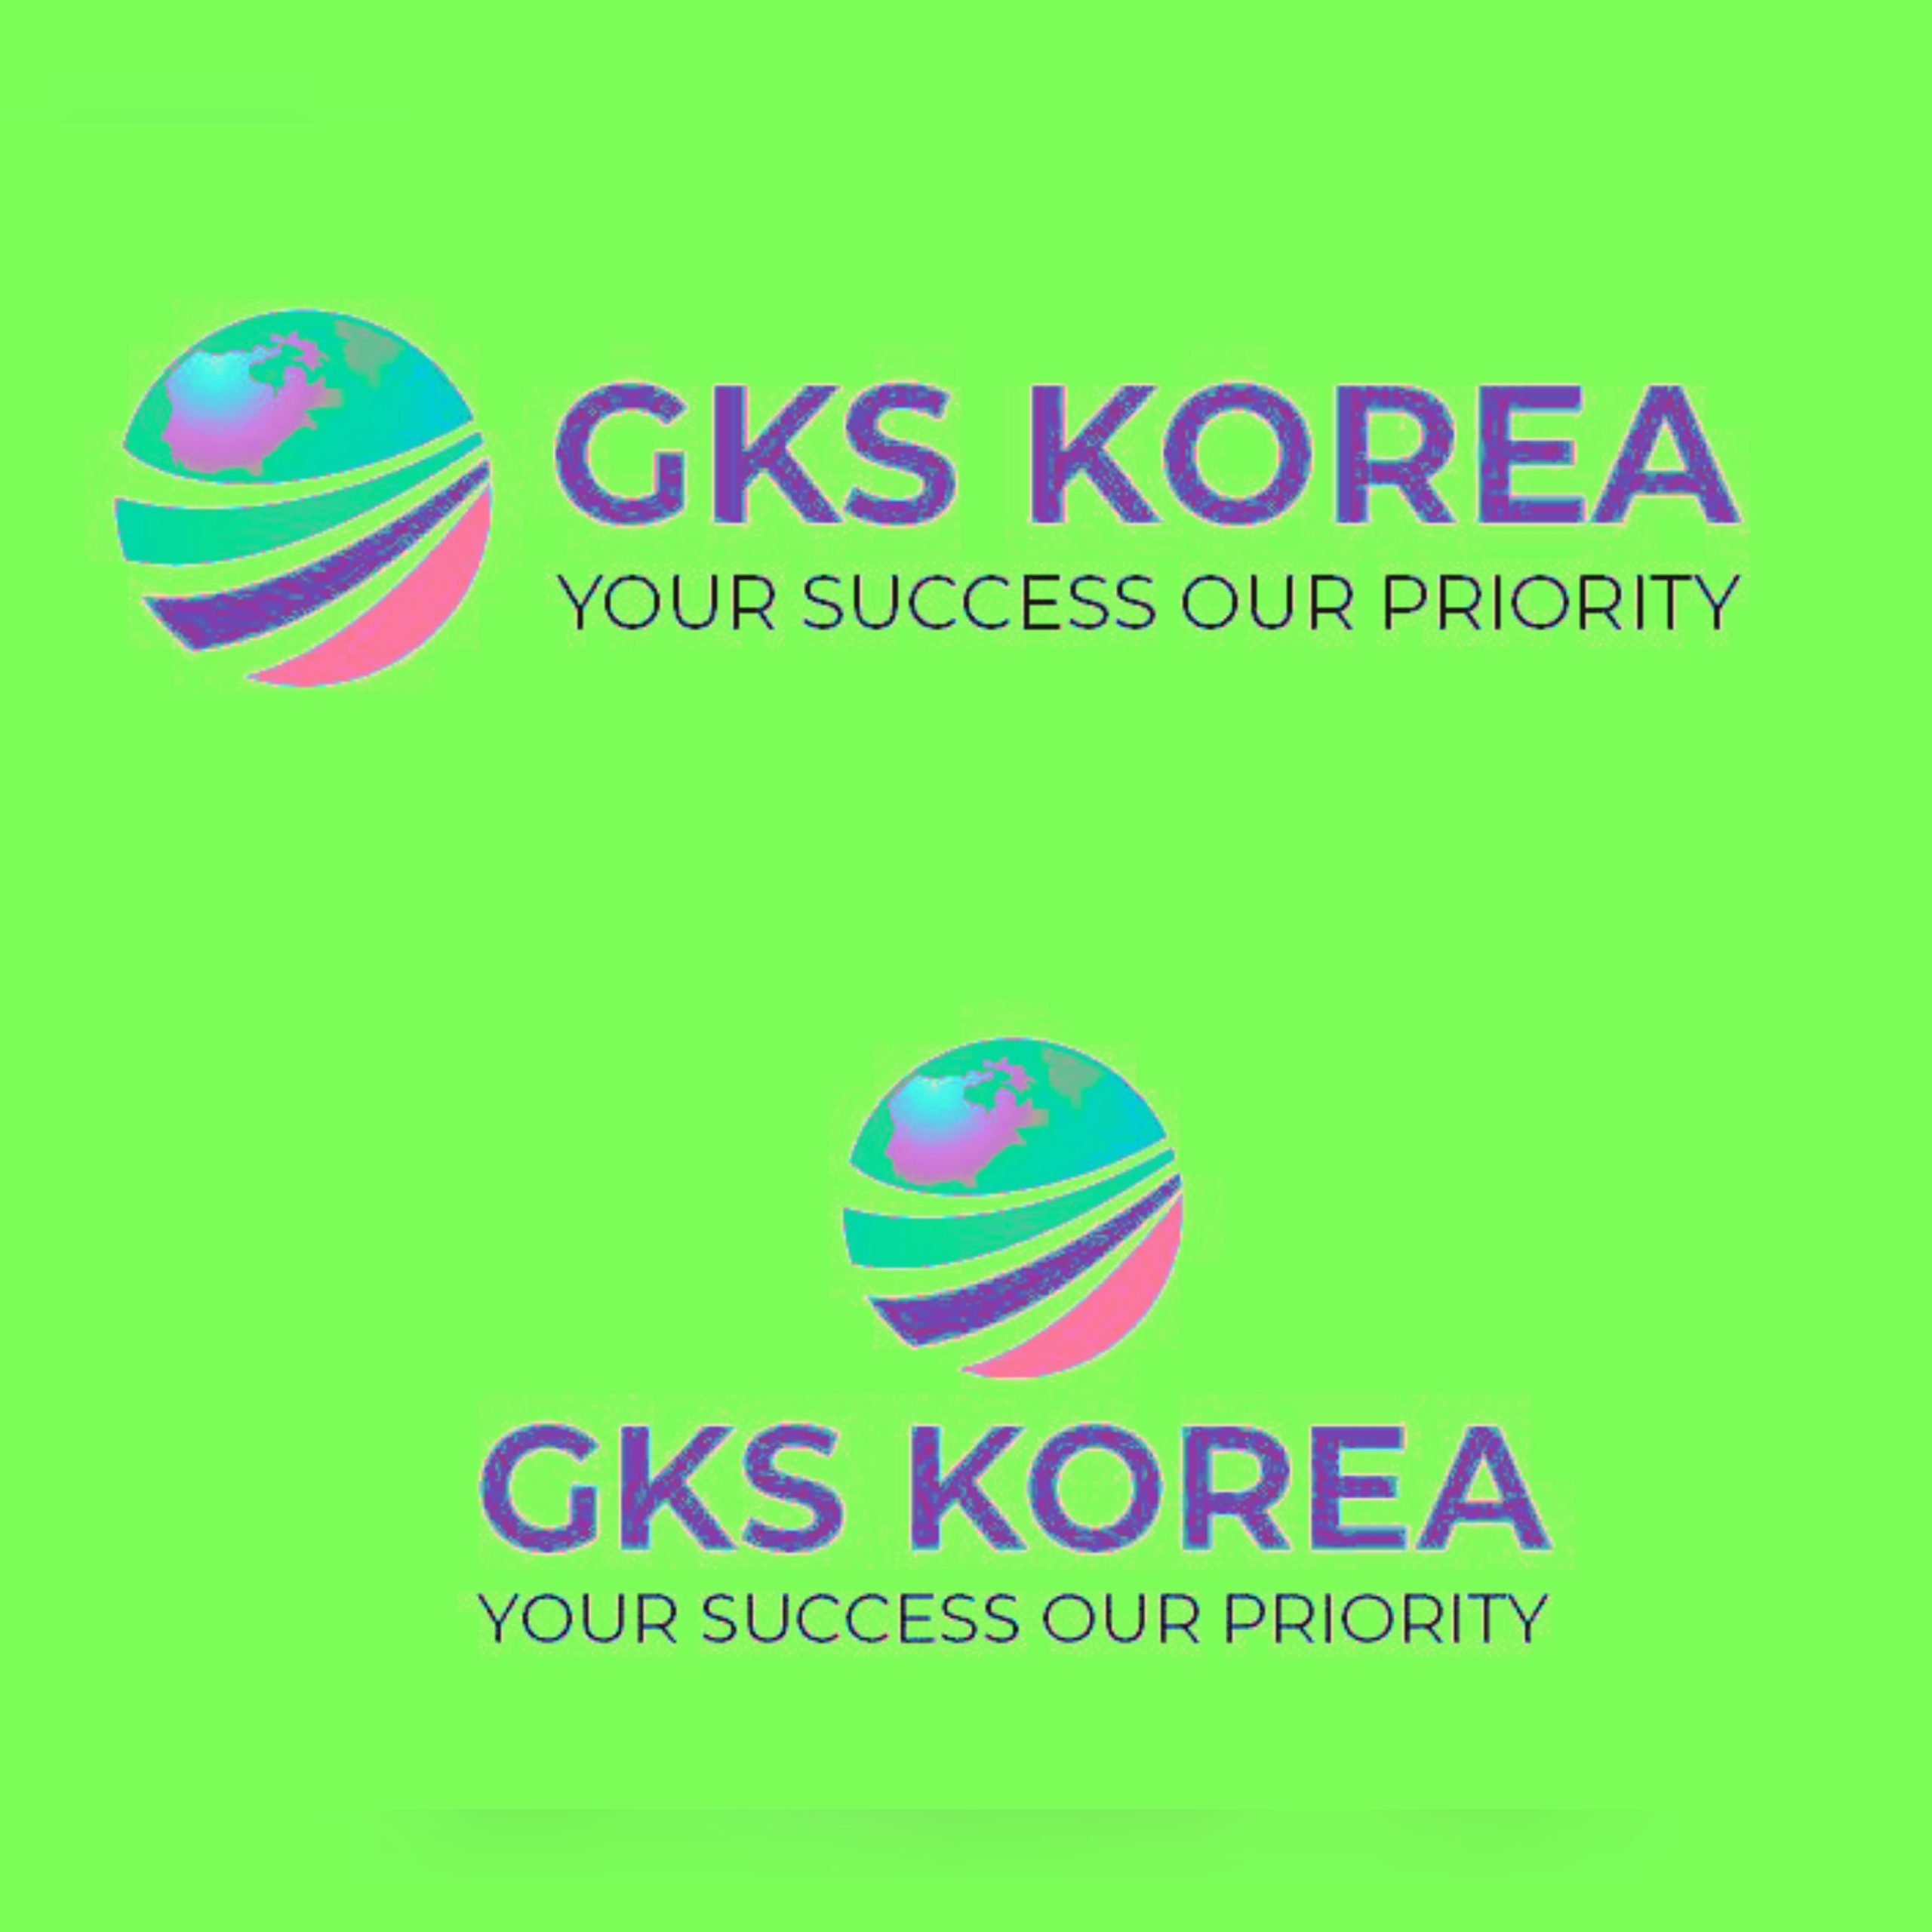 जीकेएस कोरियाले कृषि क्षेत्रमा कार्यरत नेपालीहरुलाई प्रमाणपत्र प्रदान गर्ने